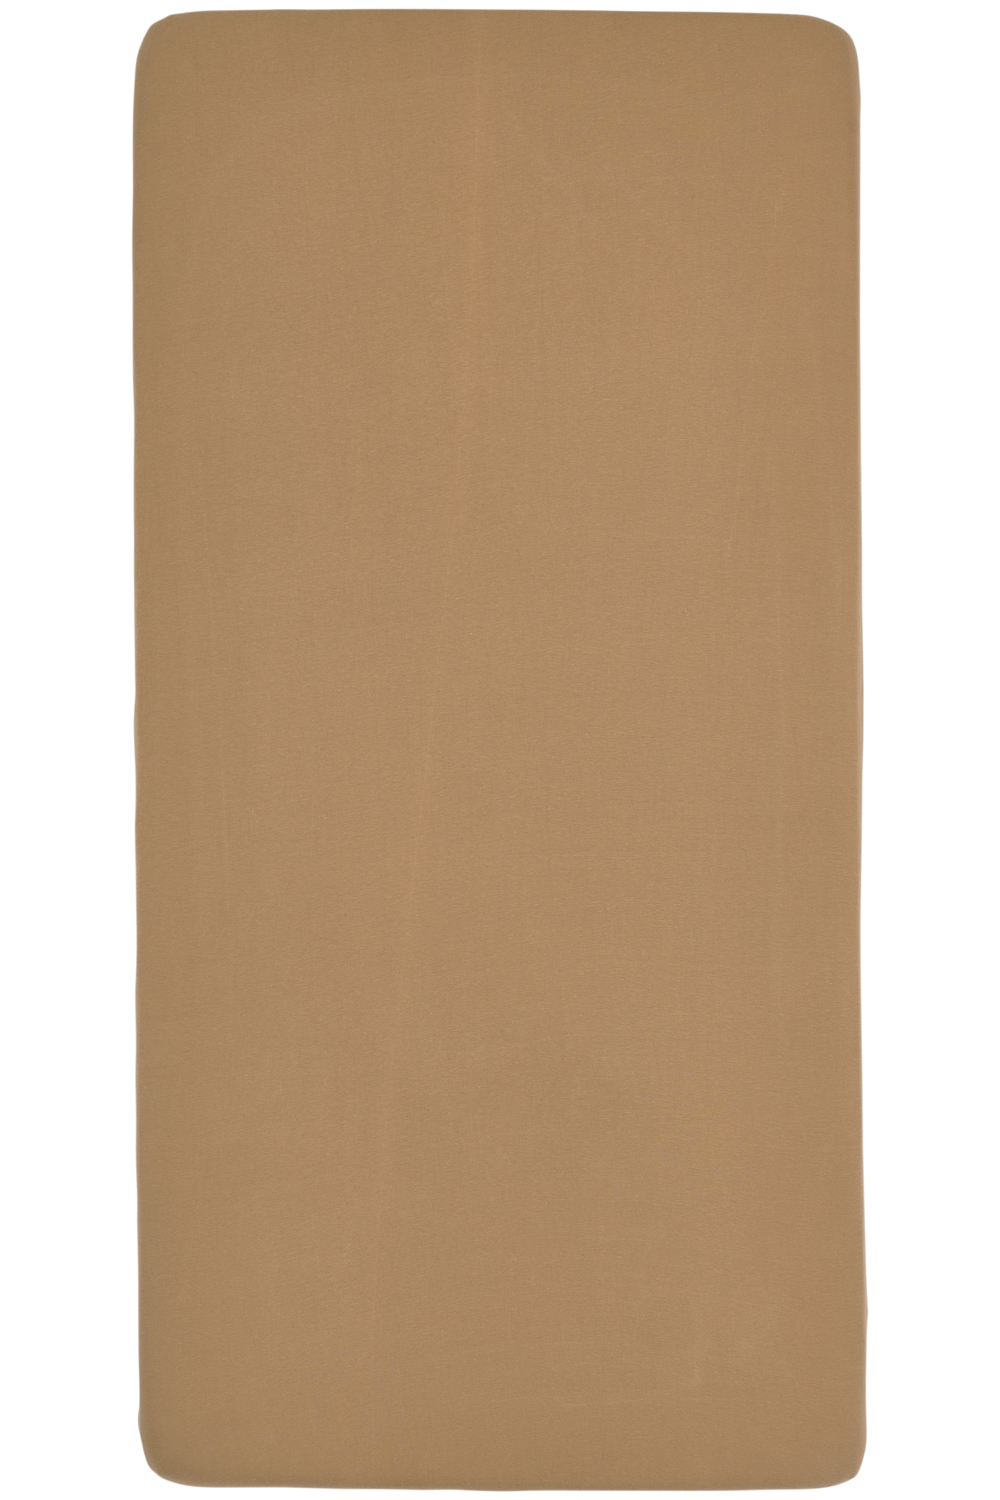 Jersey Hoeslaken Ledikant - Toffee - 60x120cm